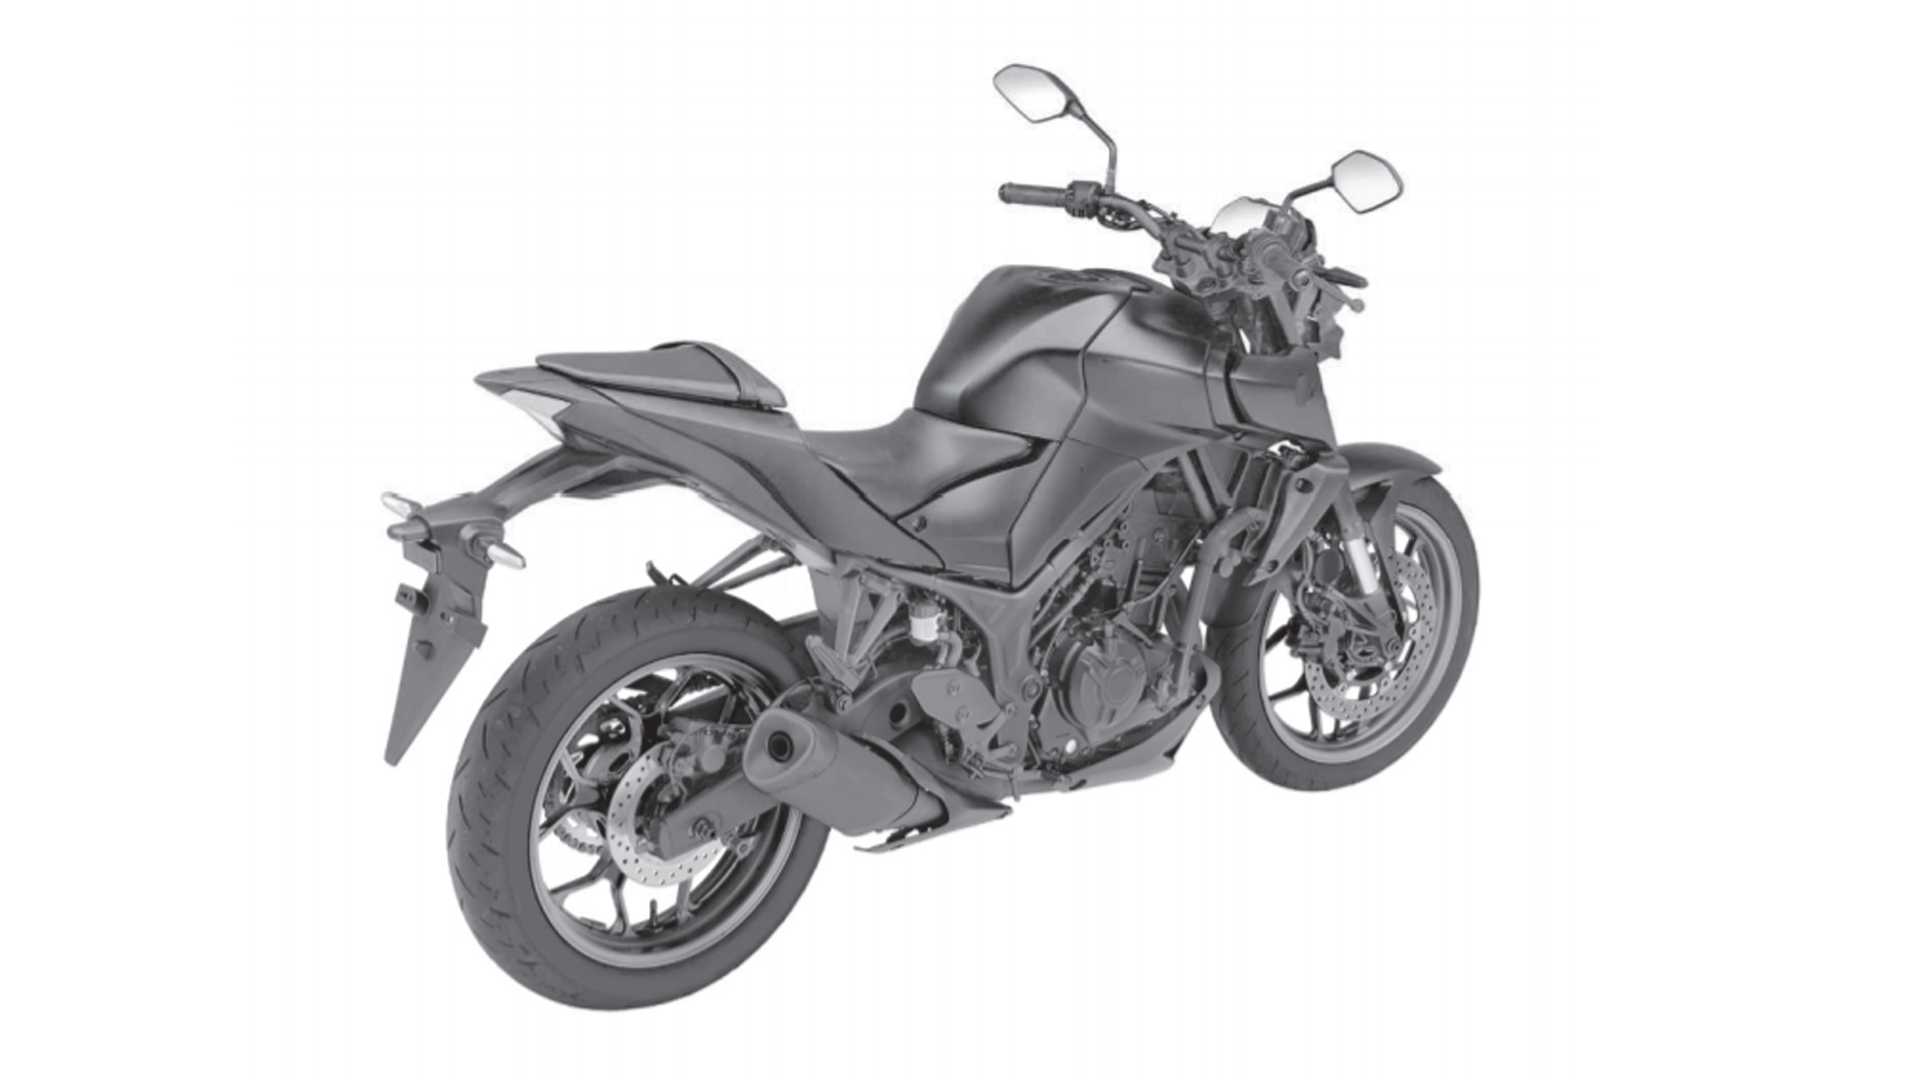 Yamaha patenteia novas MT-03 e Fazer 250 no Brasil